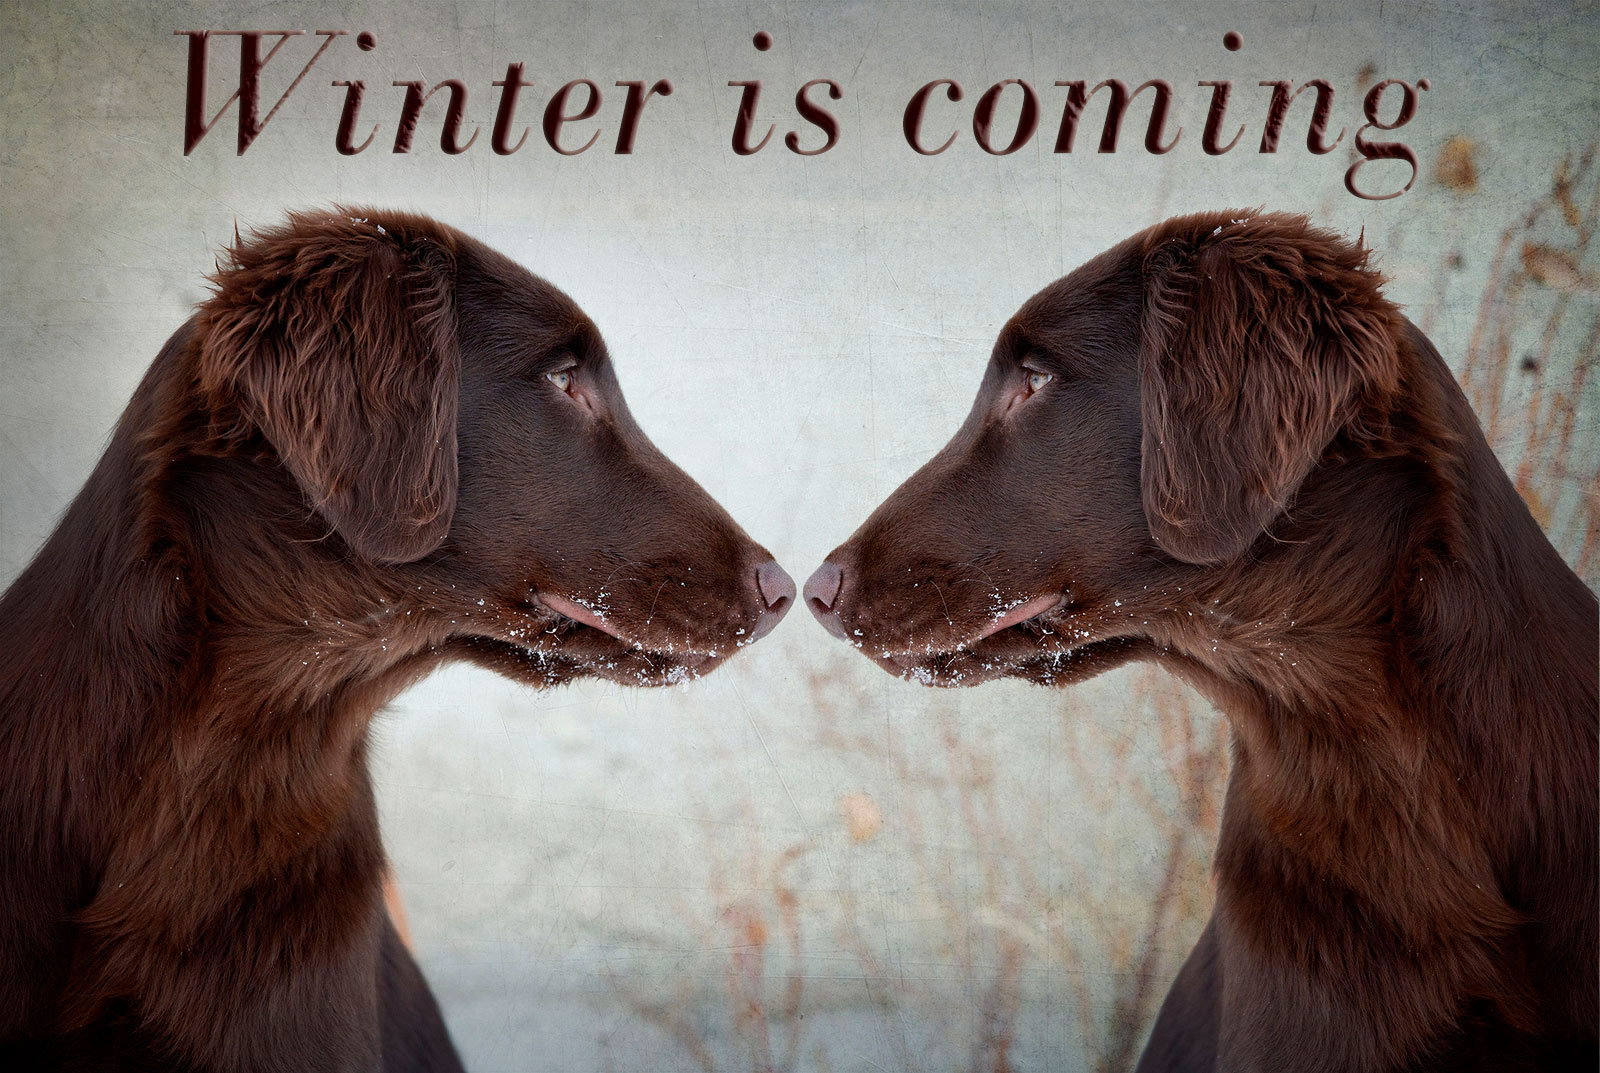 Imagem de um cachorro marrom em um ambiente nevado olhando para o lado esquerdo, encarando o mesmo cachorro espelhado.